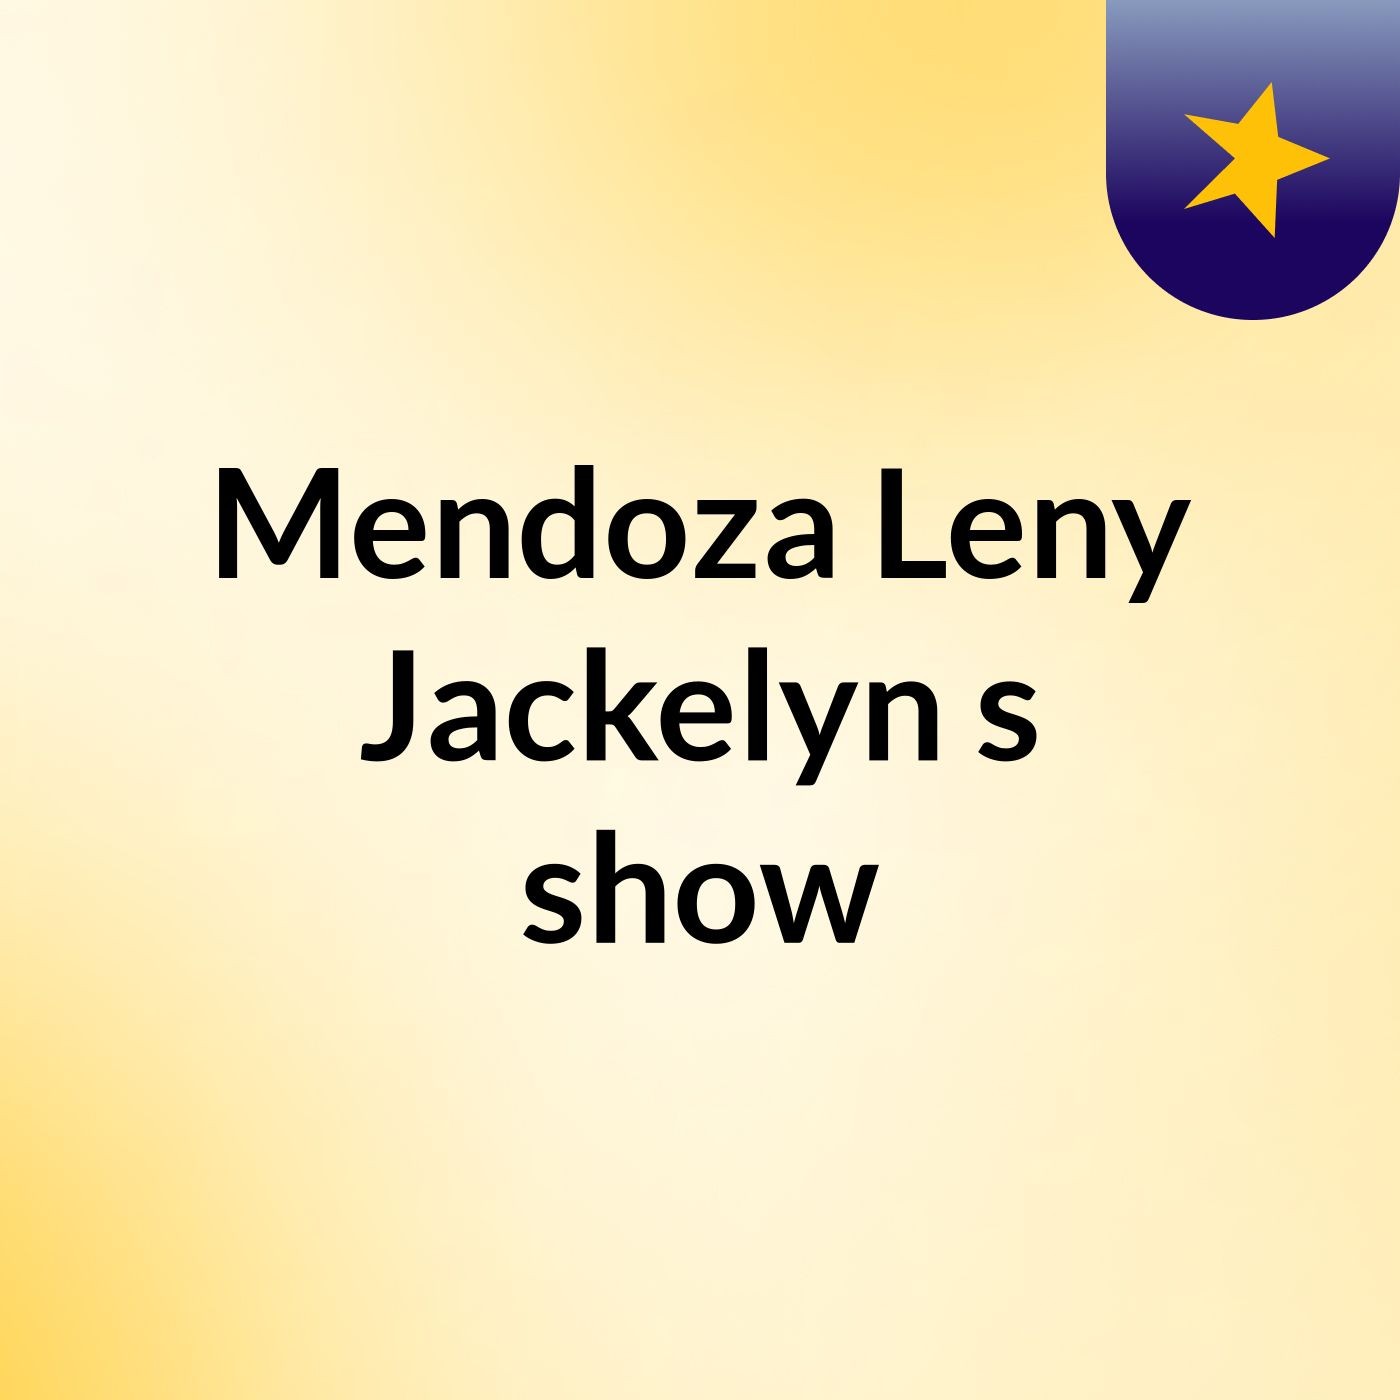 Mendoza Leny Jackelyn's show